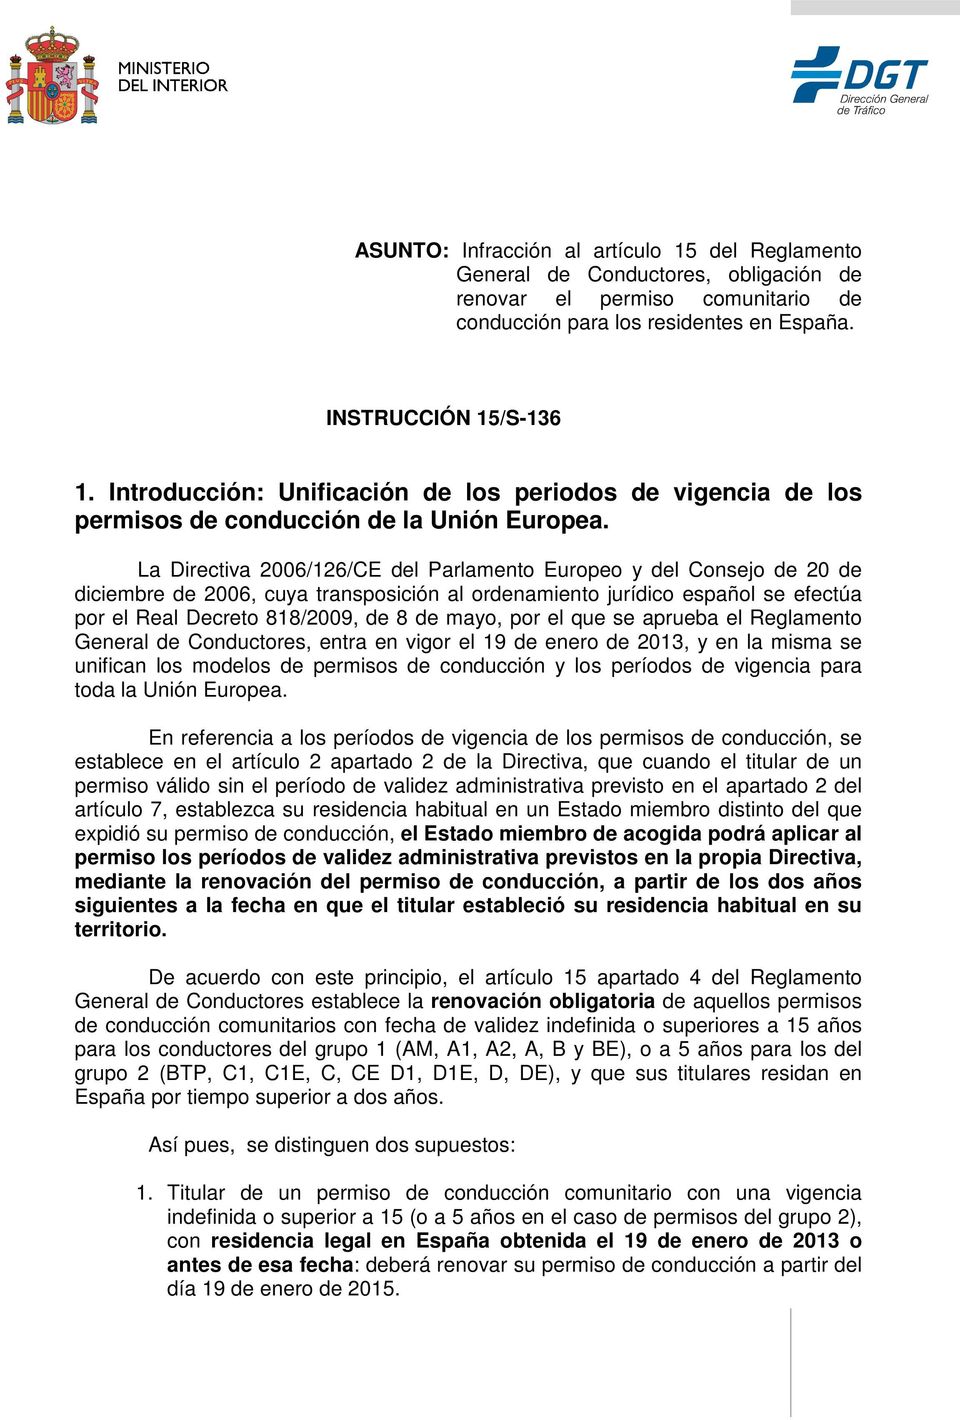 La Directiva 2006/126/CE del Parlamento Europeo y del Consejo de 20 de diciembre de 2006, cuya transposición al ordenamiento jurídico español se efectúa por el Real Decreto 818/2009, de 8 de mayo,